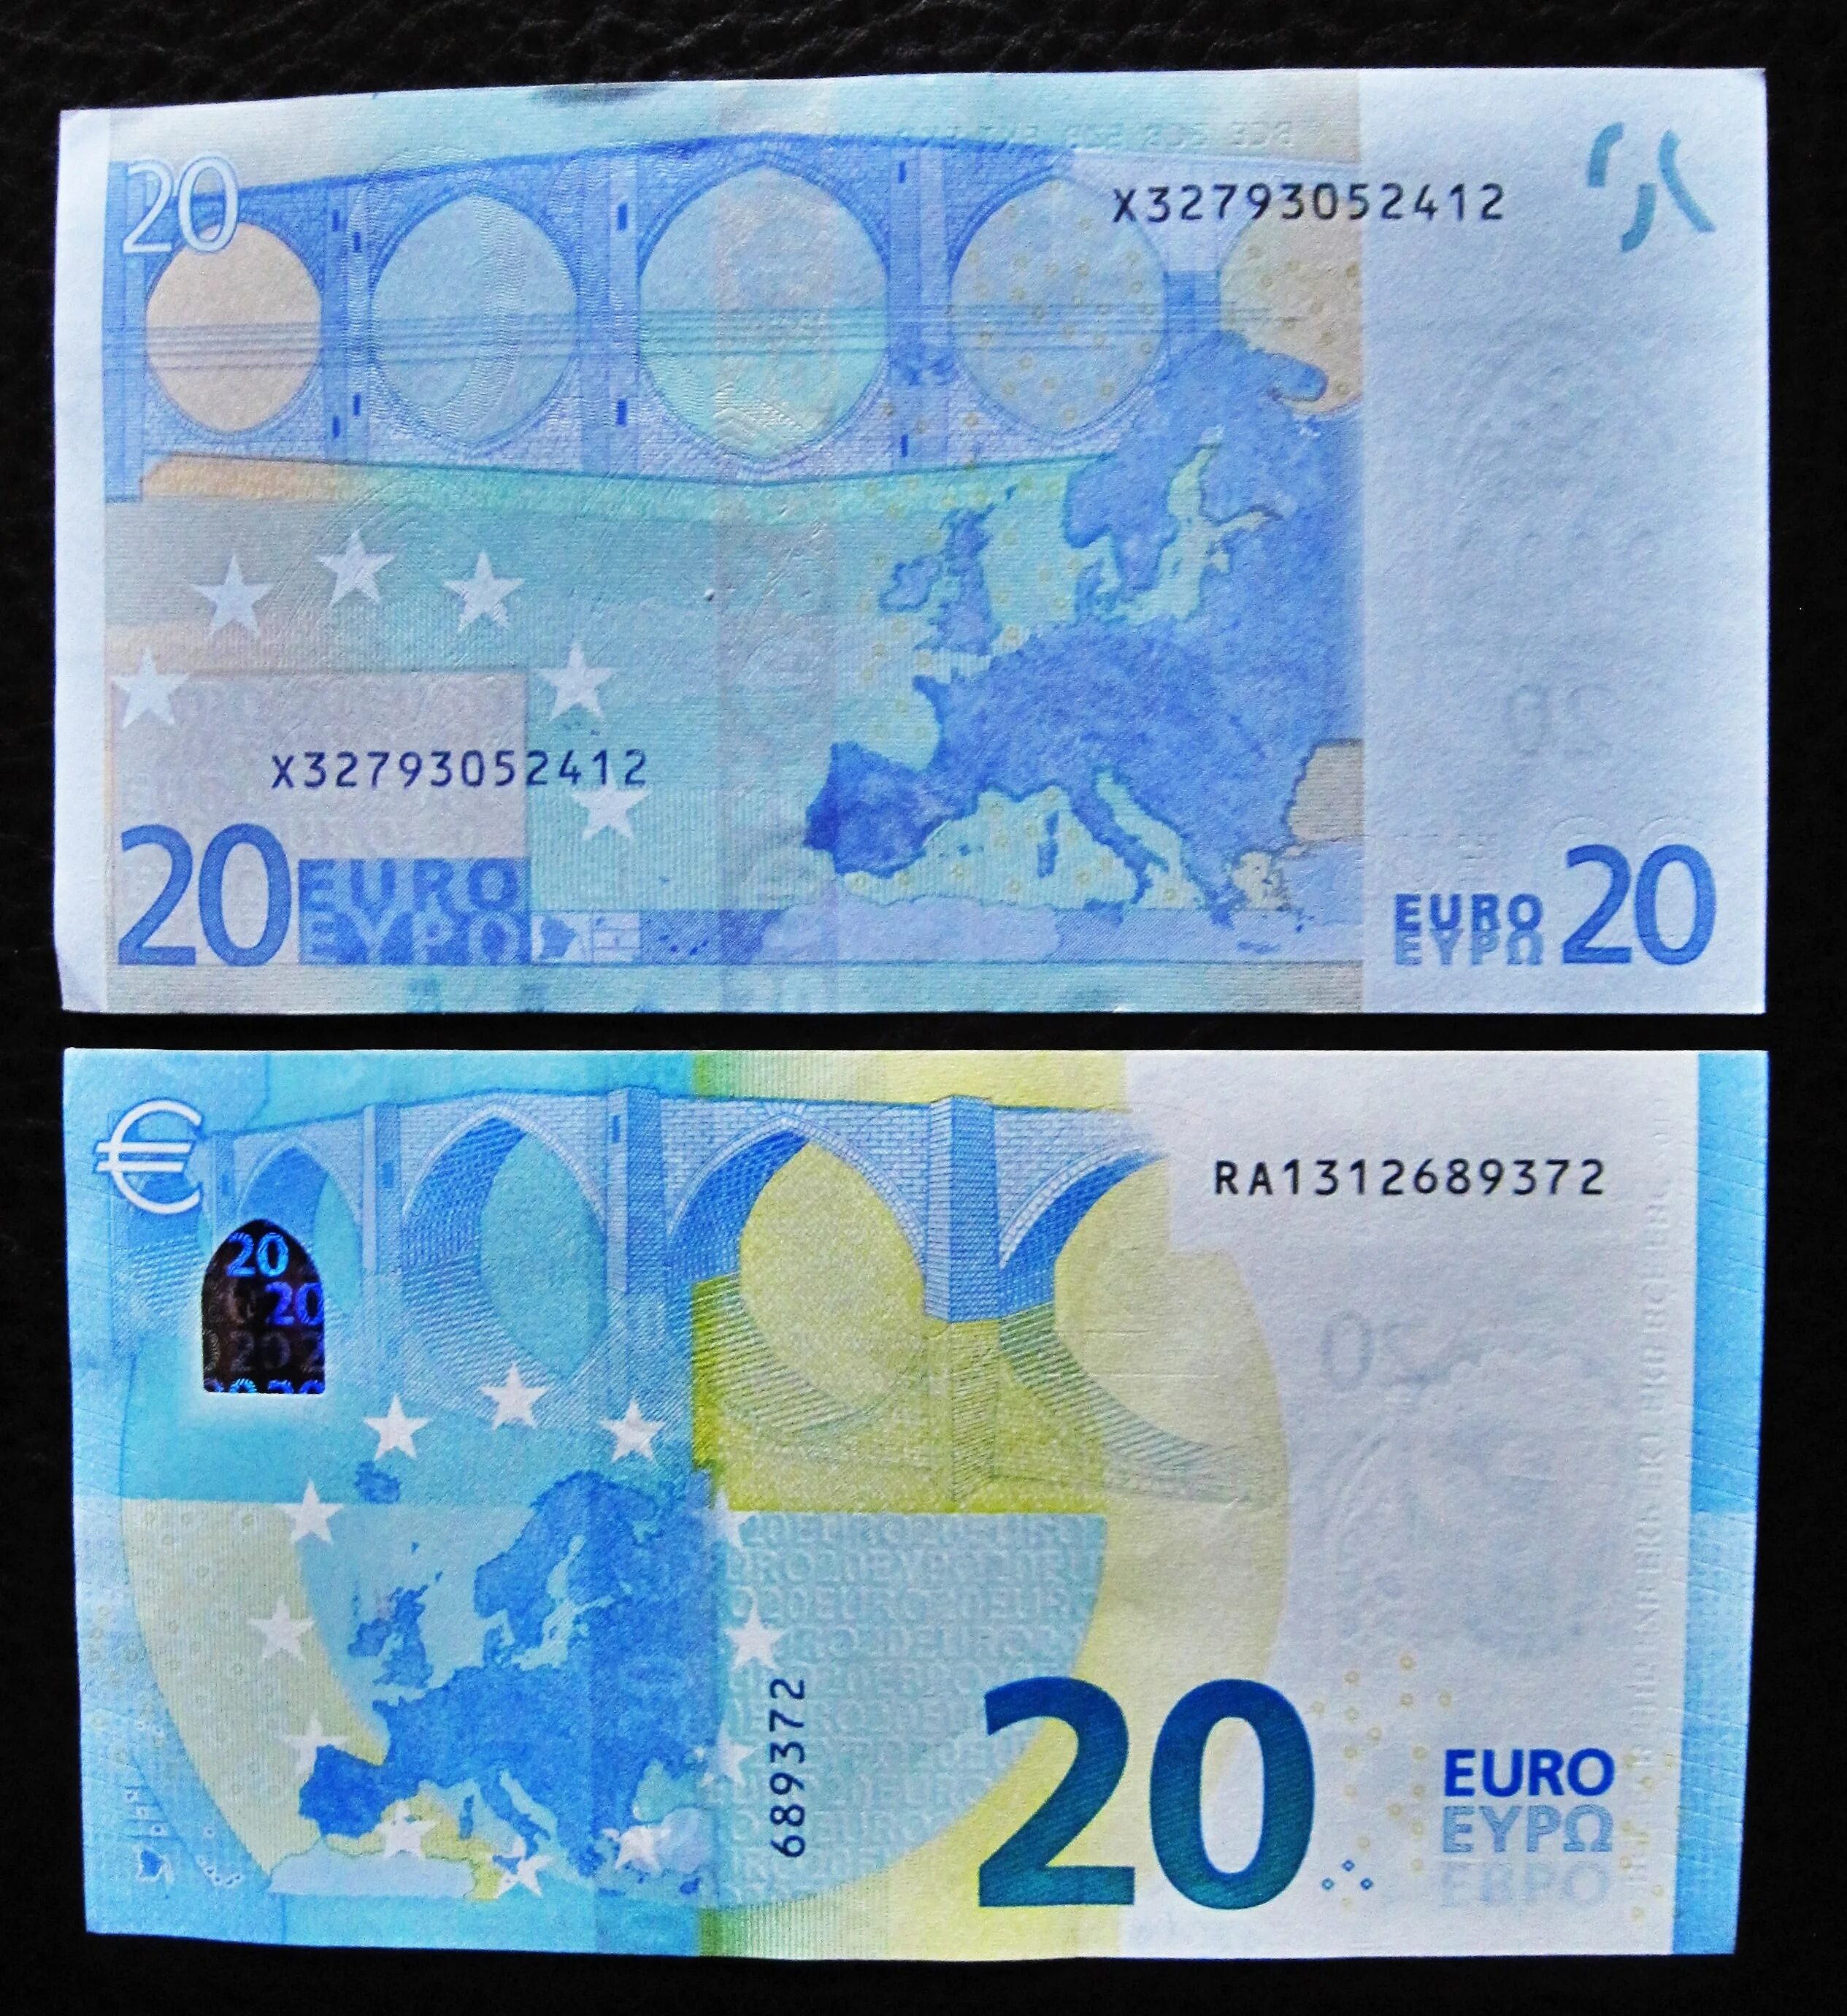 20 Евро. Банкноты евро 20. Старые банкноты евро 20. Синяя купюра евро.